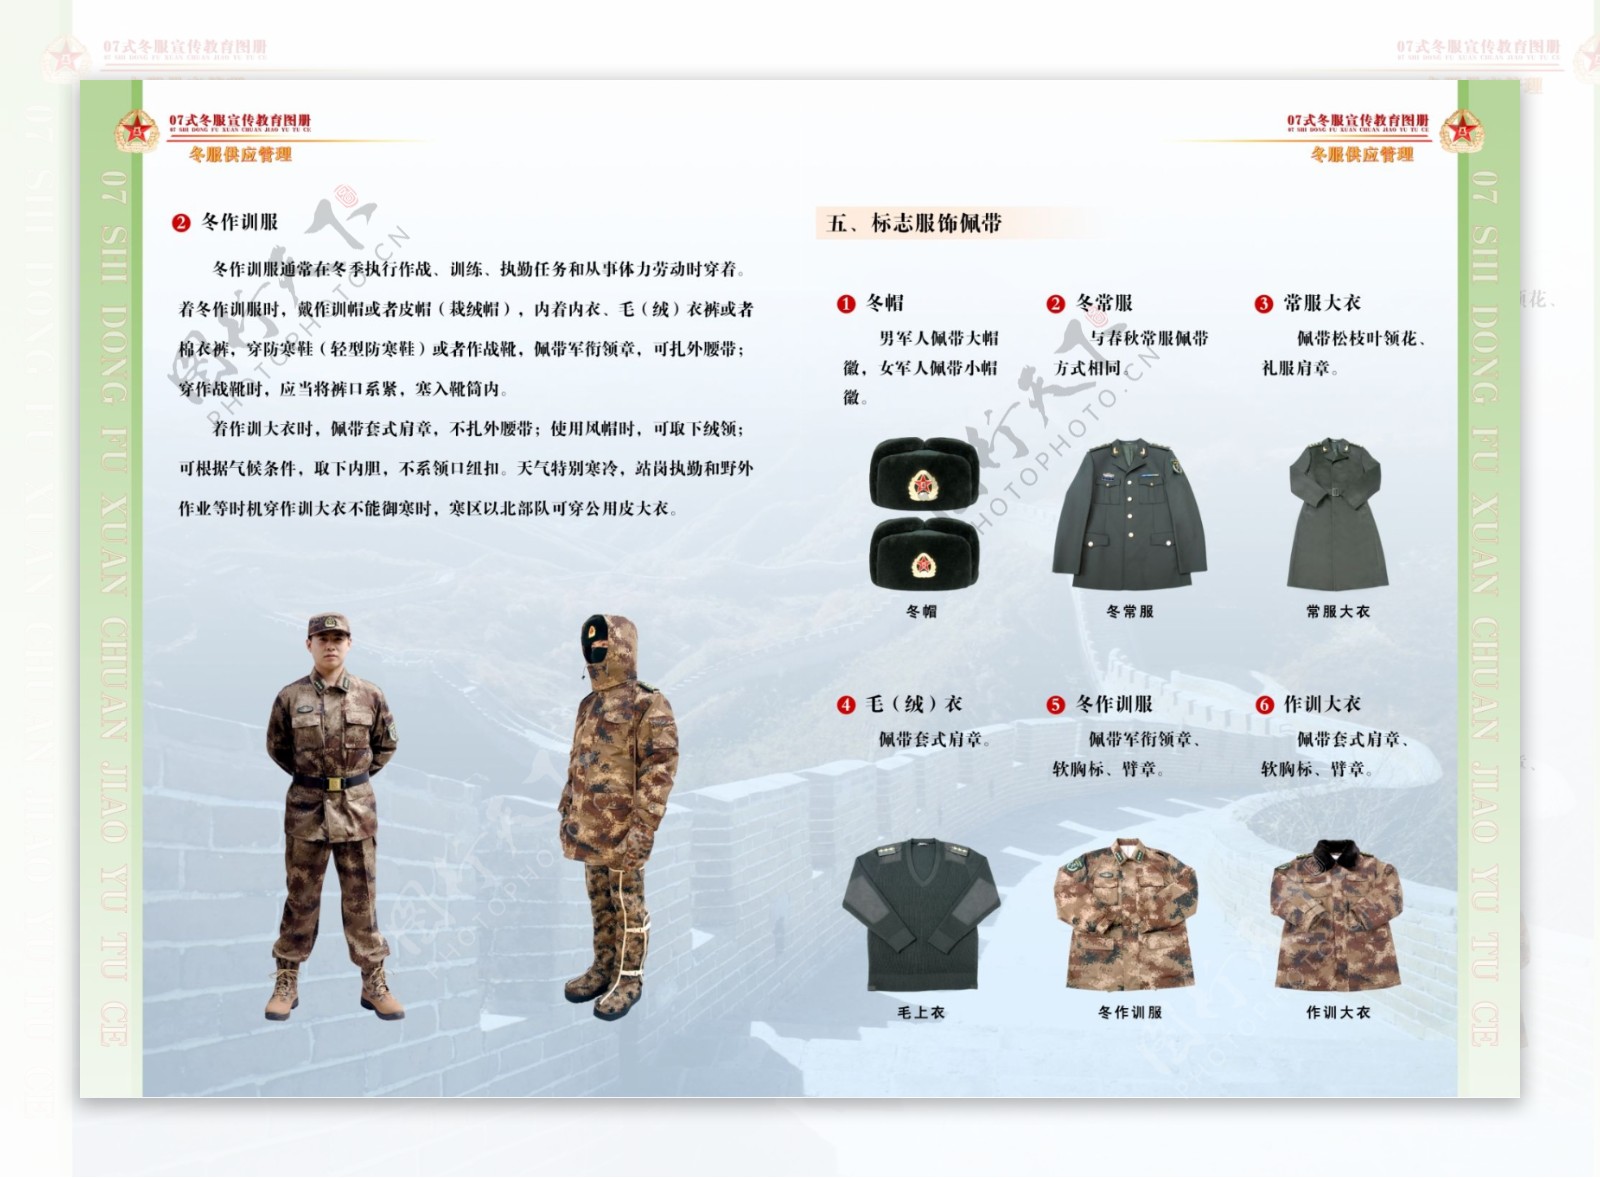 07式军服冬装宣传教育图册13共16幅图片